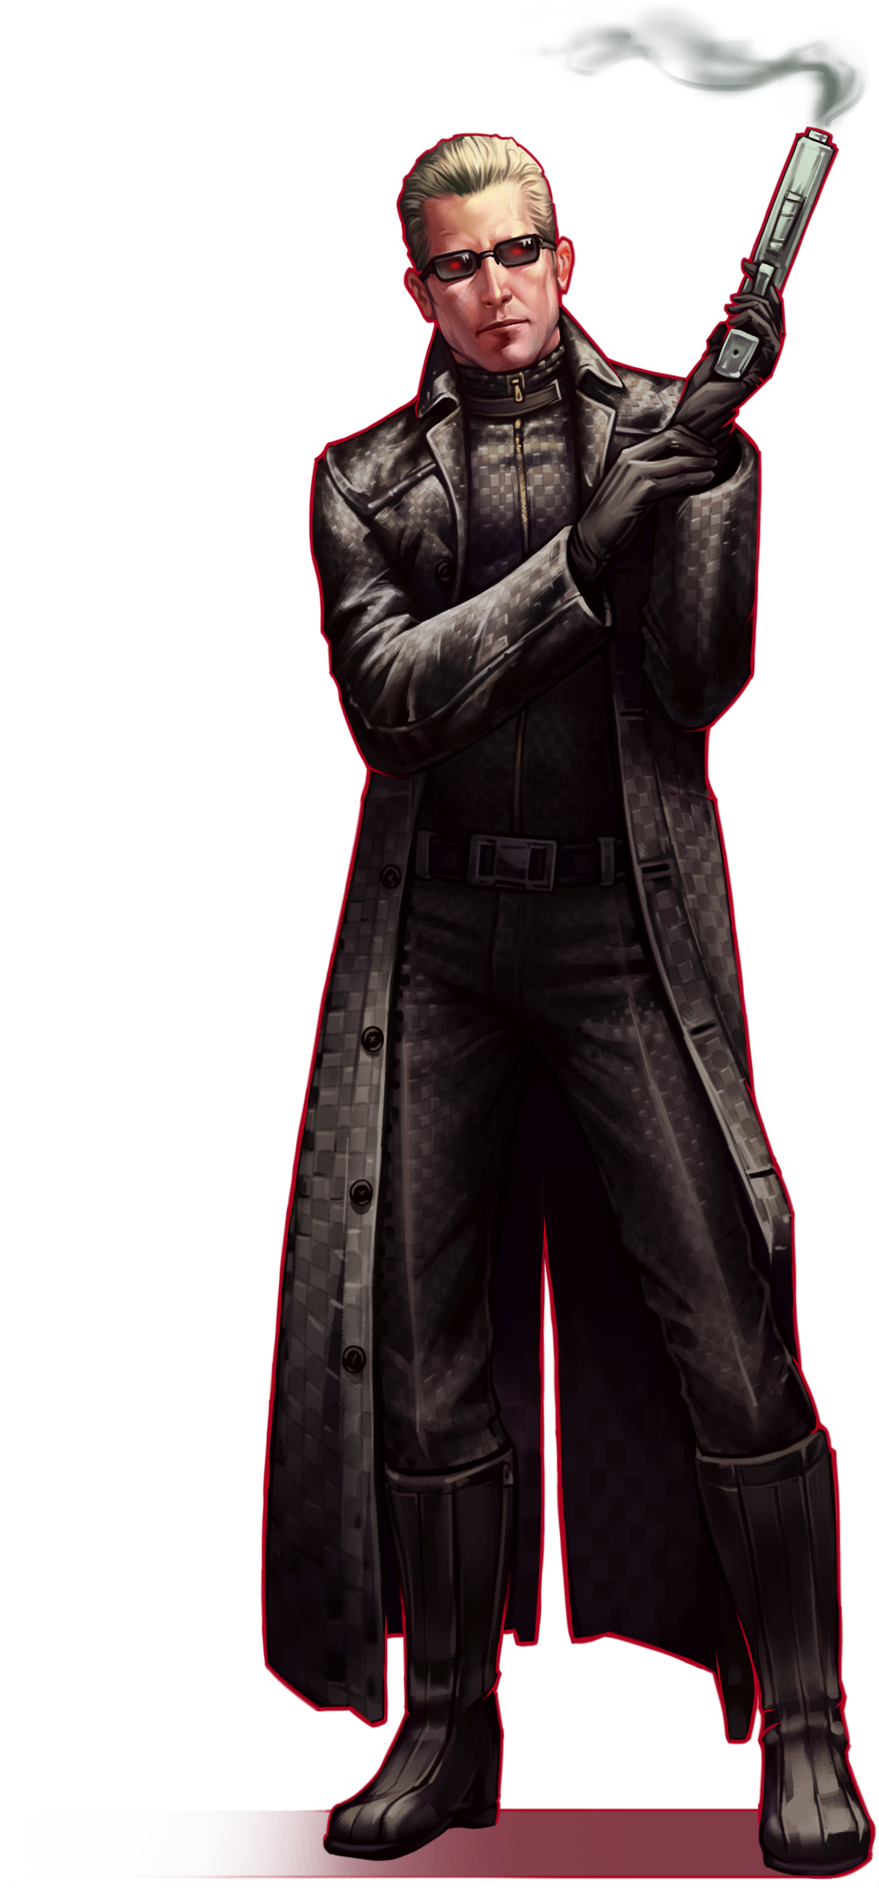 A Man In A Long Coat Holding A Gun